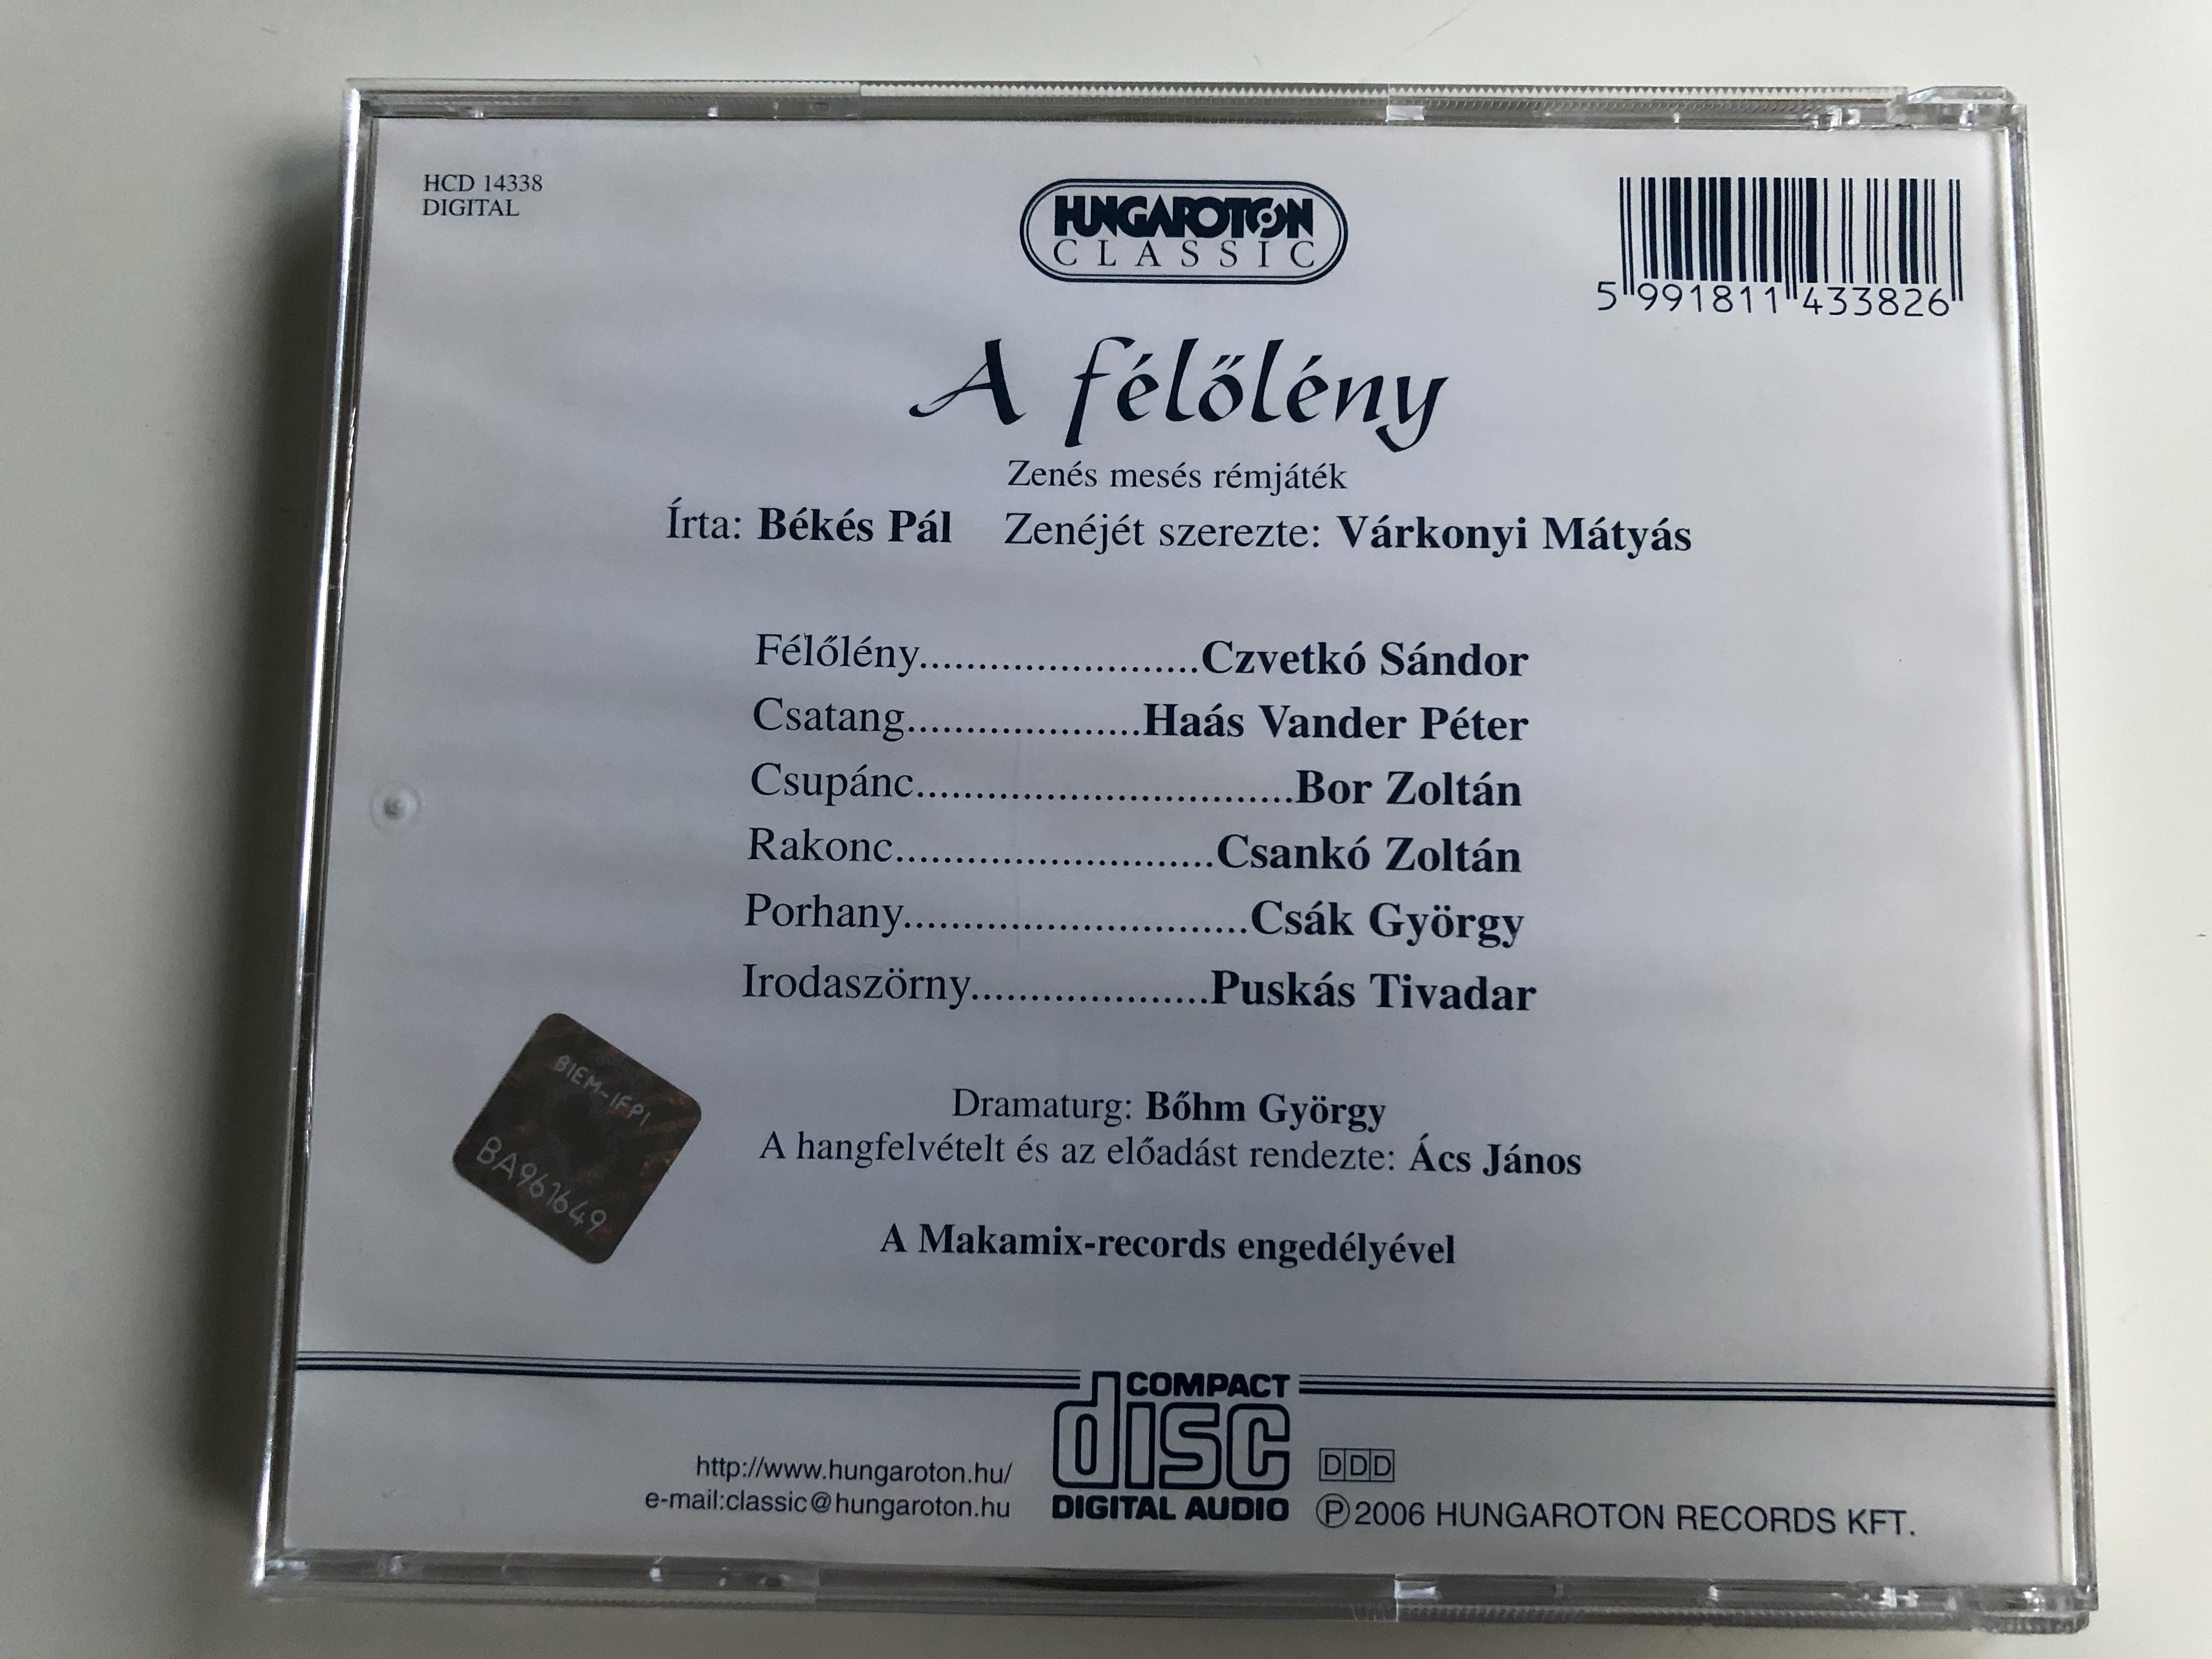 b-k-s-p-l-v-rkonyi-m-ty-s-a-f-l-l-ny-zenes-meses-remjetek-hungaroton-classic-audio-cd-2006-stereo-hcd-14338-5-.jpg